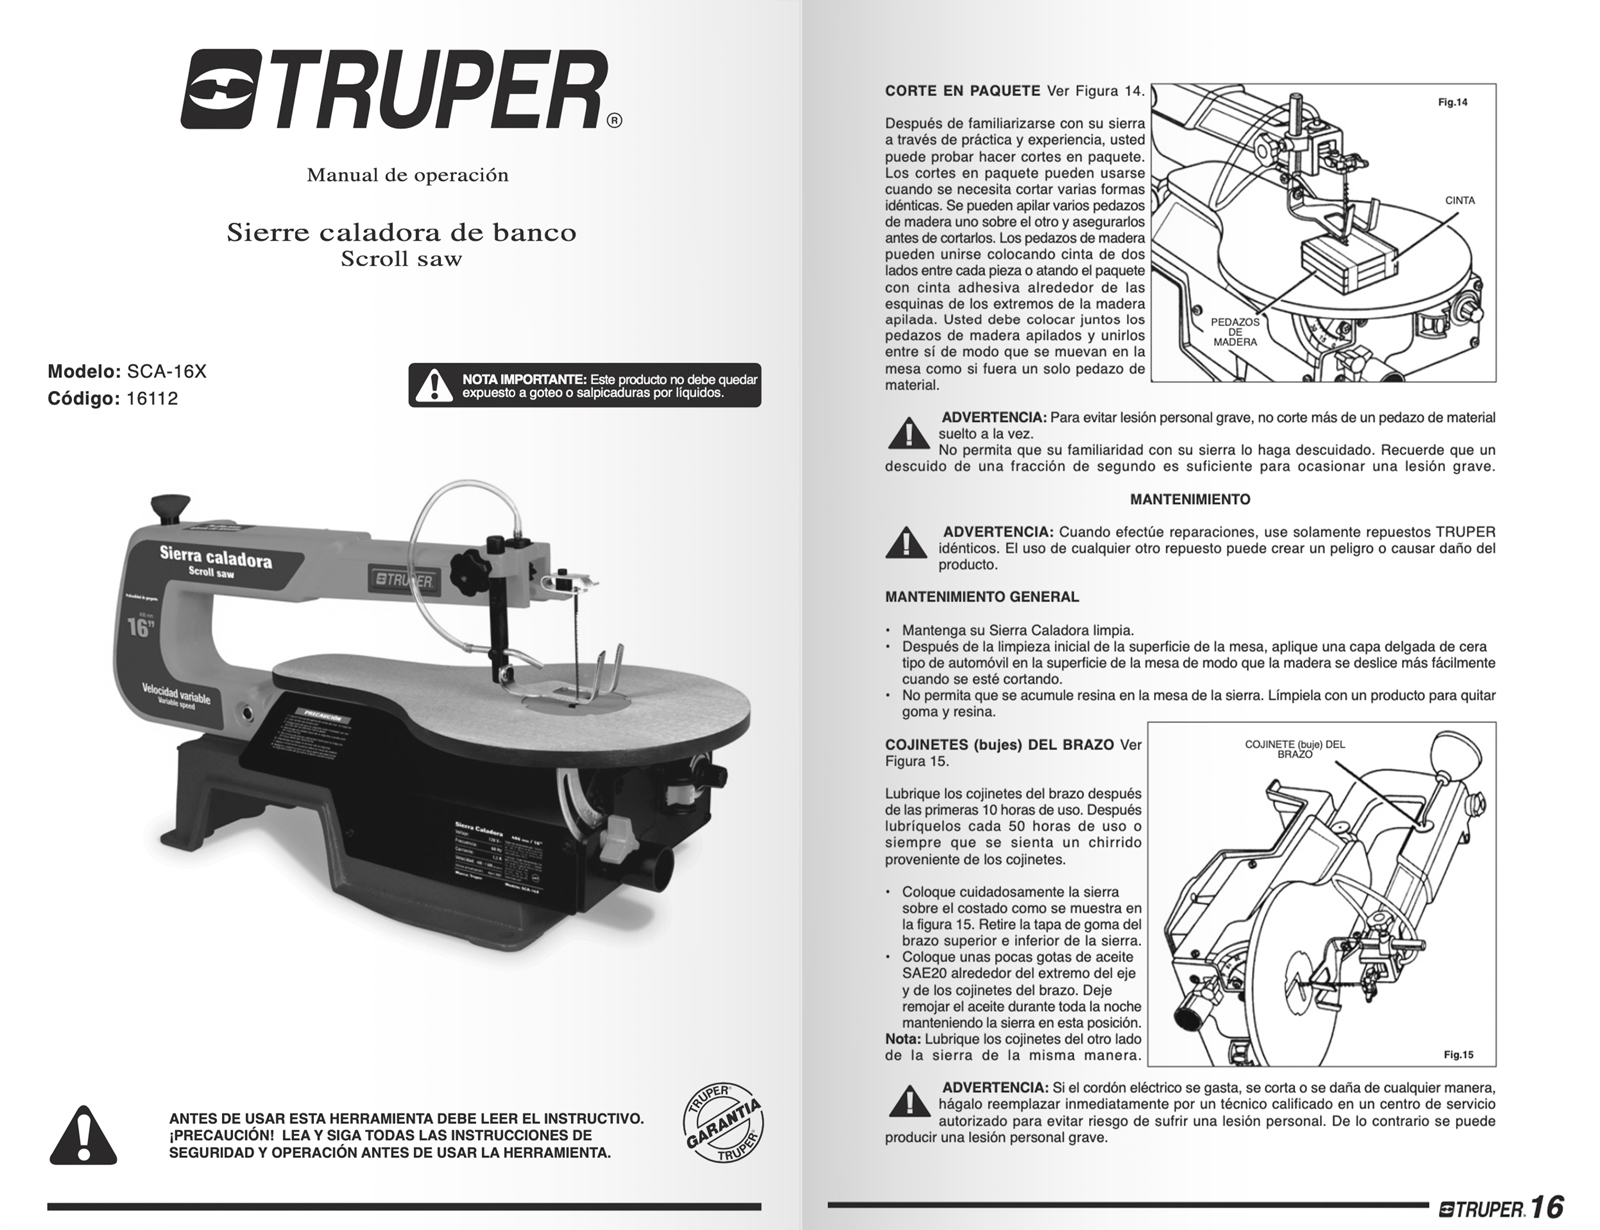 ES: Antiguo diseño de manual de instrucciones Truper.